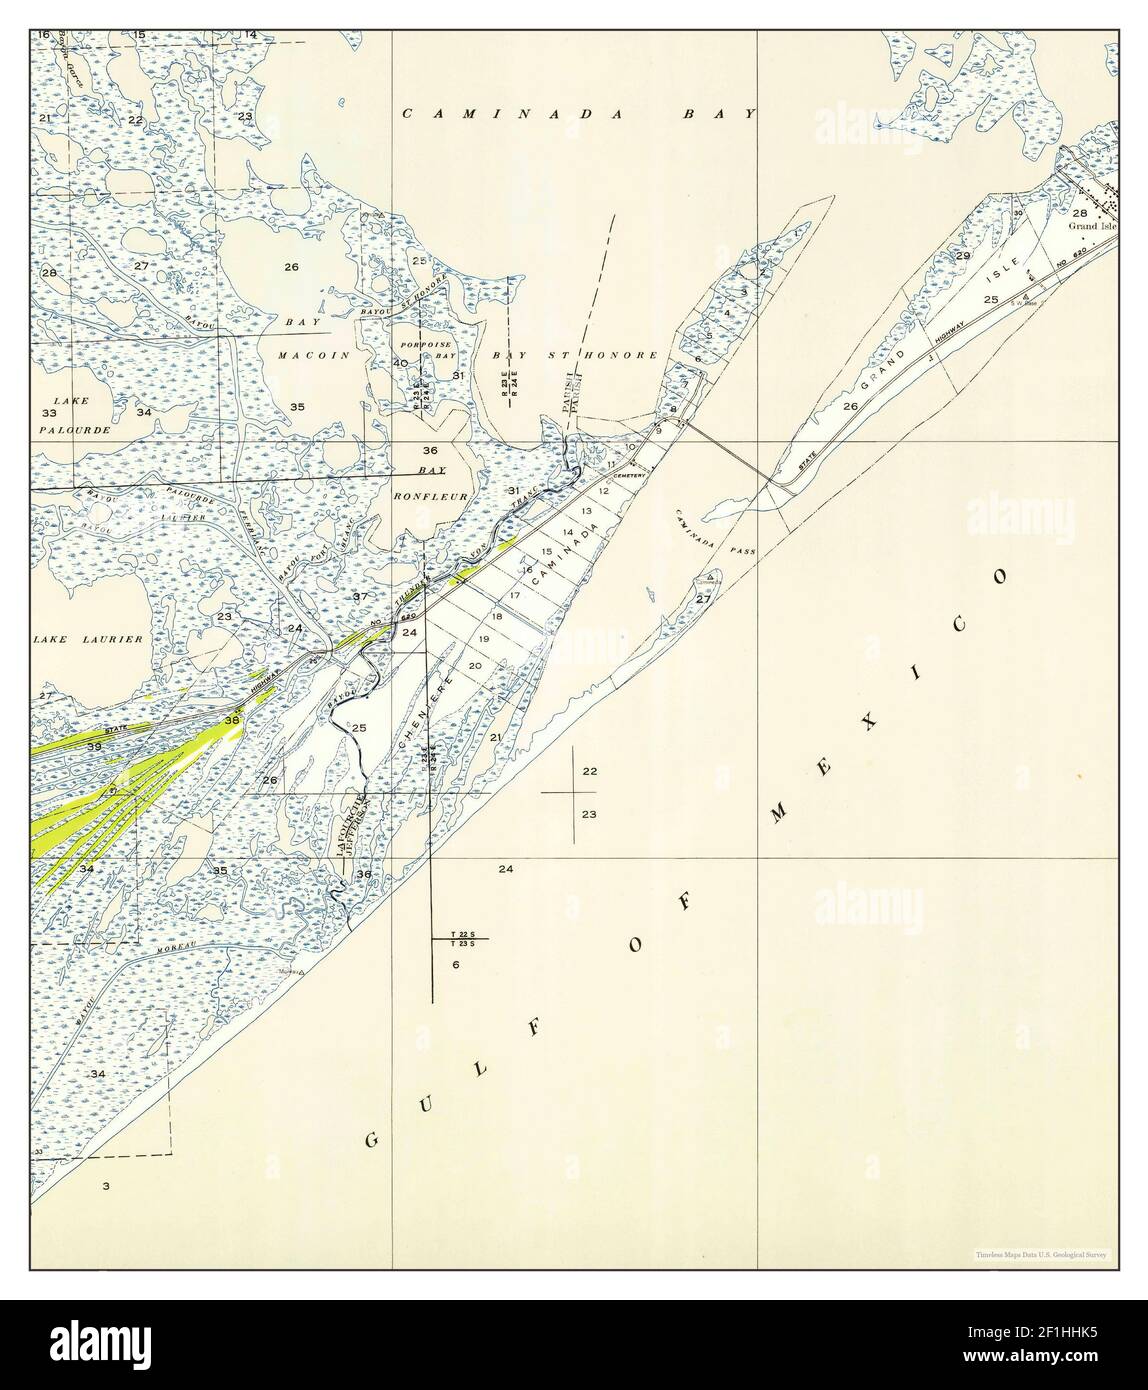 Caminada Pass, Louisiana, Karte 1954, 1:31680, Vereinigte Staaten von Amerika von Timeless Maps, Daten U.S. Geological Survey Stockfoto